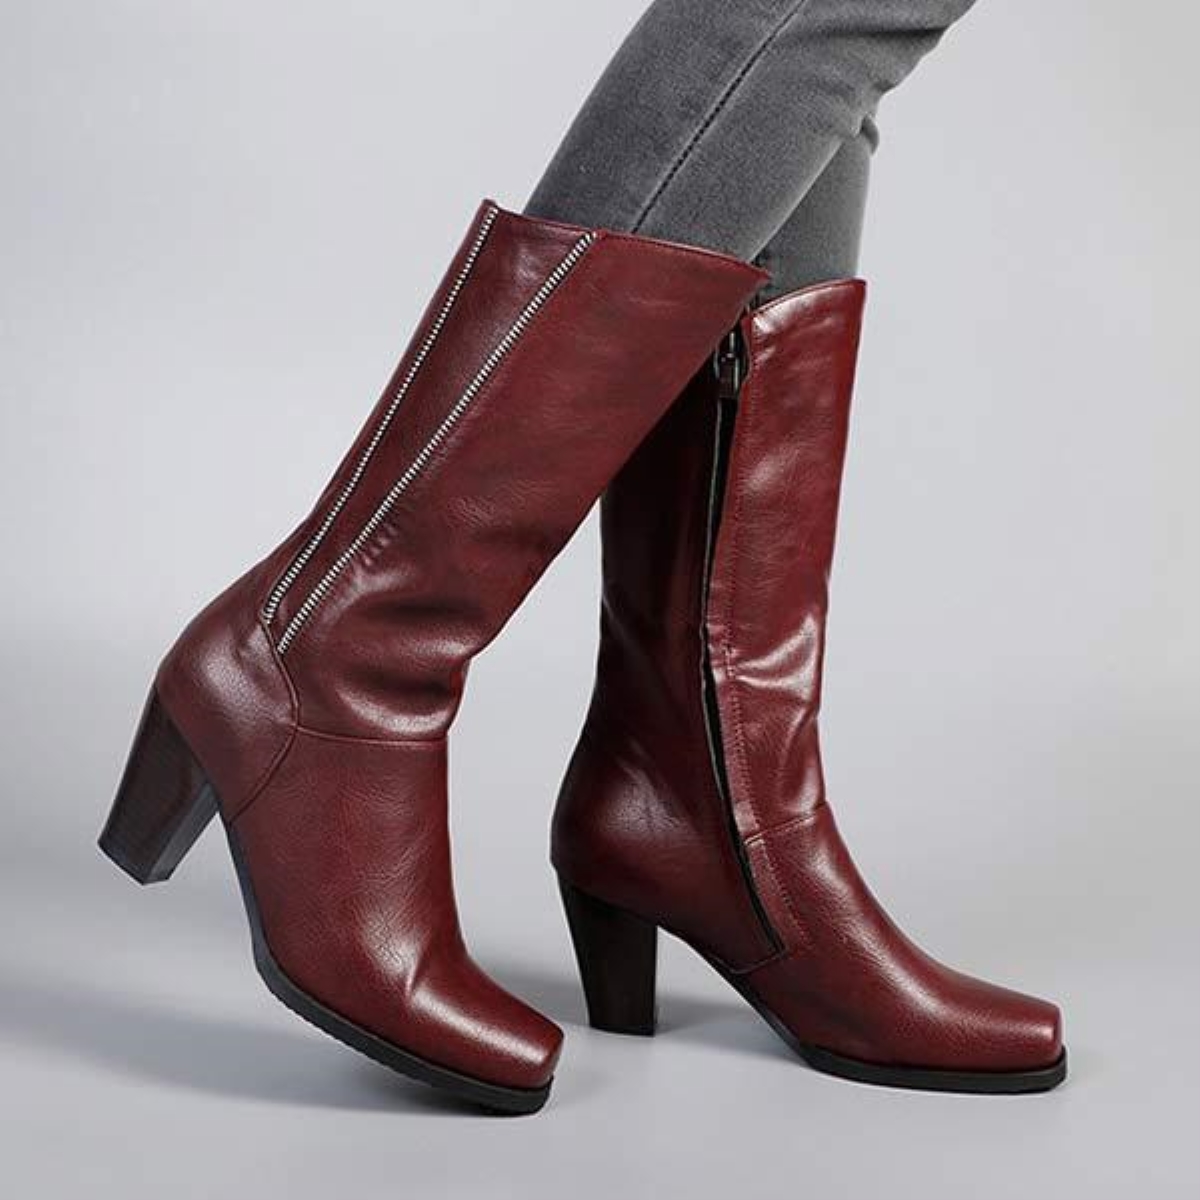 Women Wood Grain Thick Heel High Heel Knight Boots 86378382c